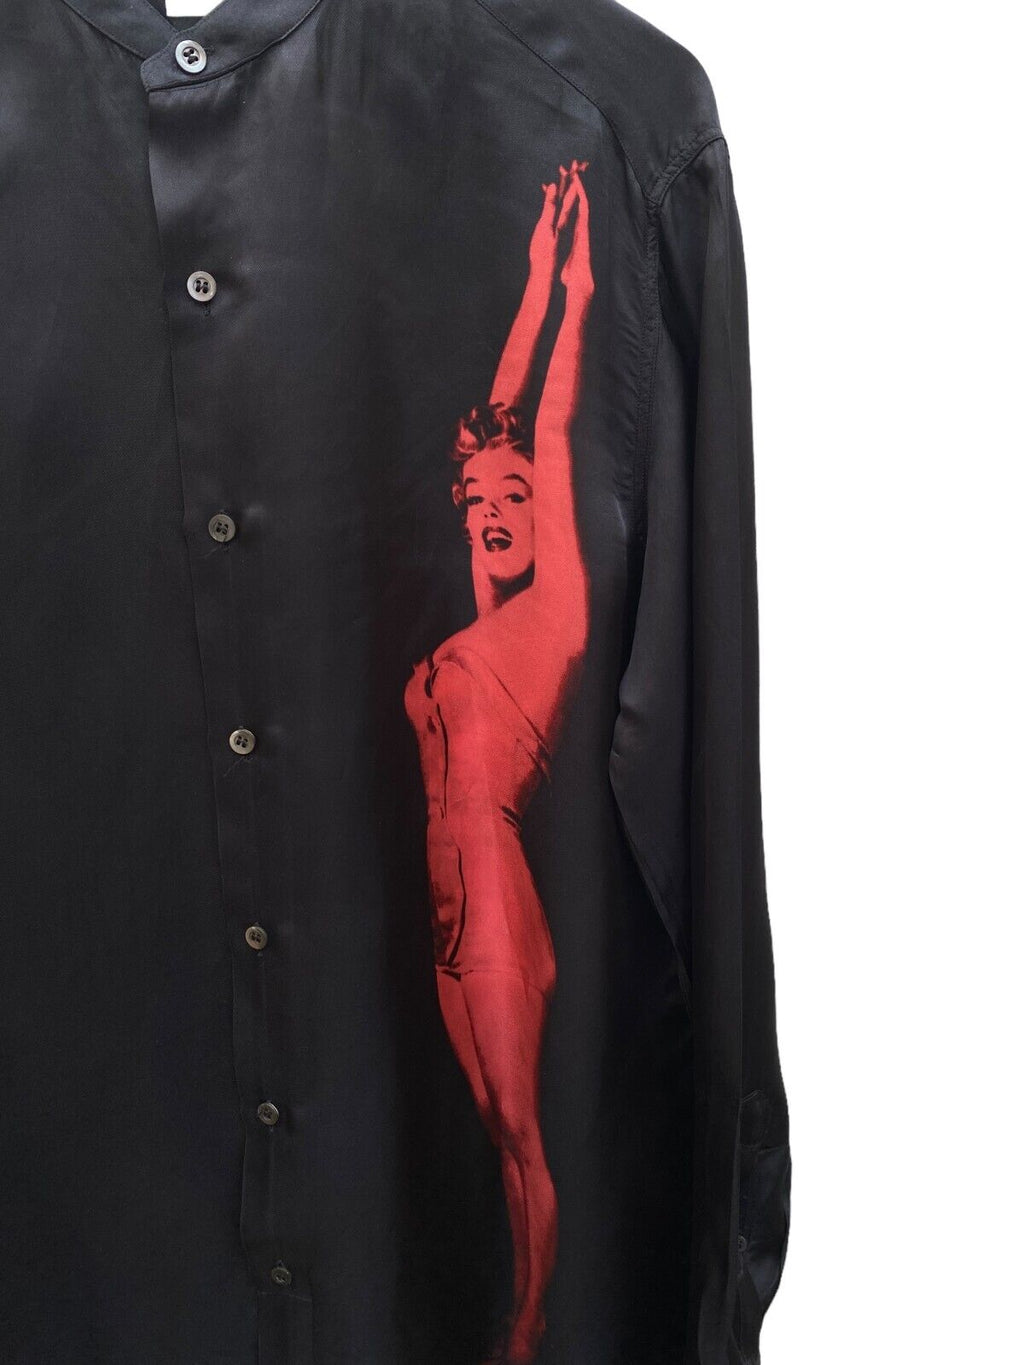 RARE SS 2016 Marilyn Monroe Long Black Shirt Size 50 Large L